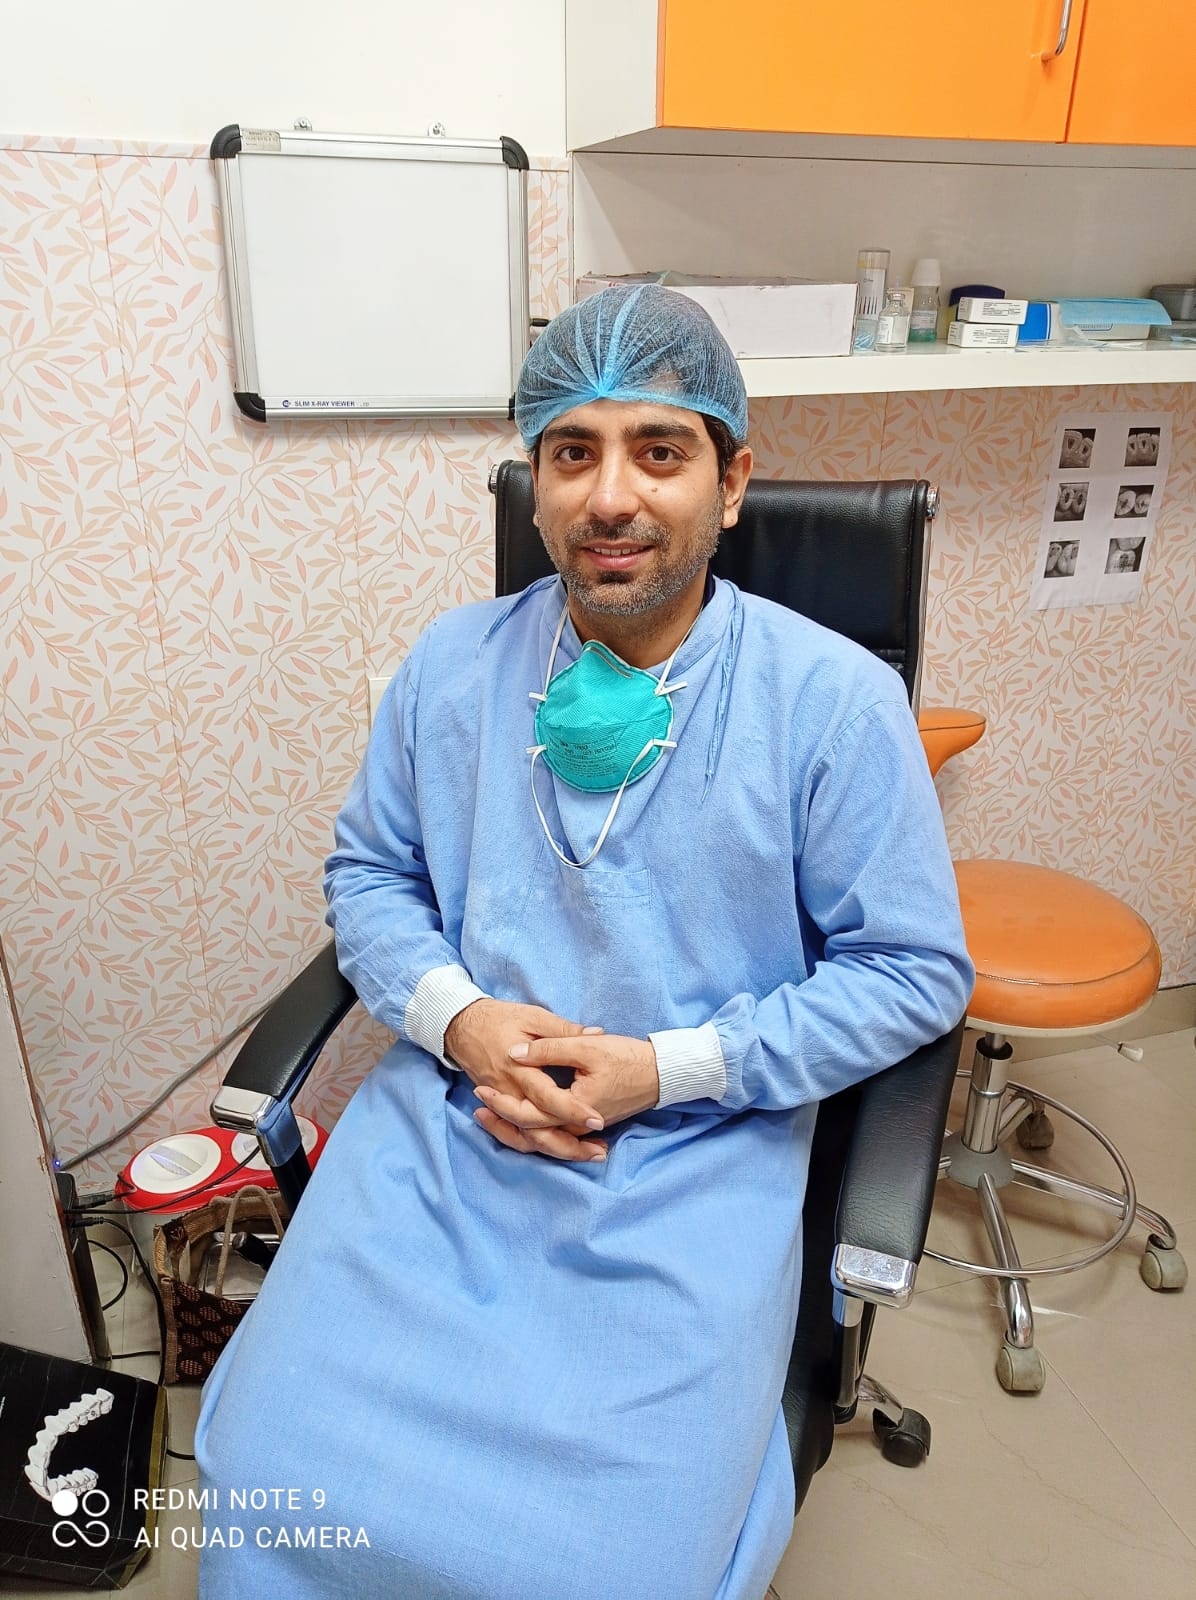 Dr. Amit Chawla